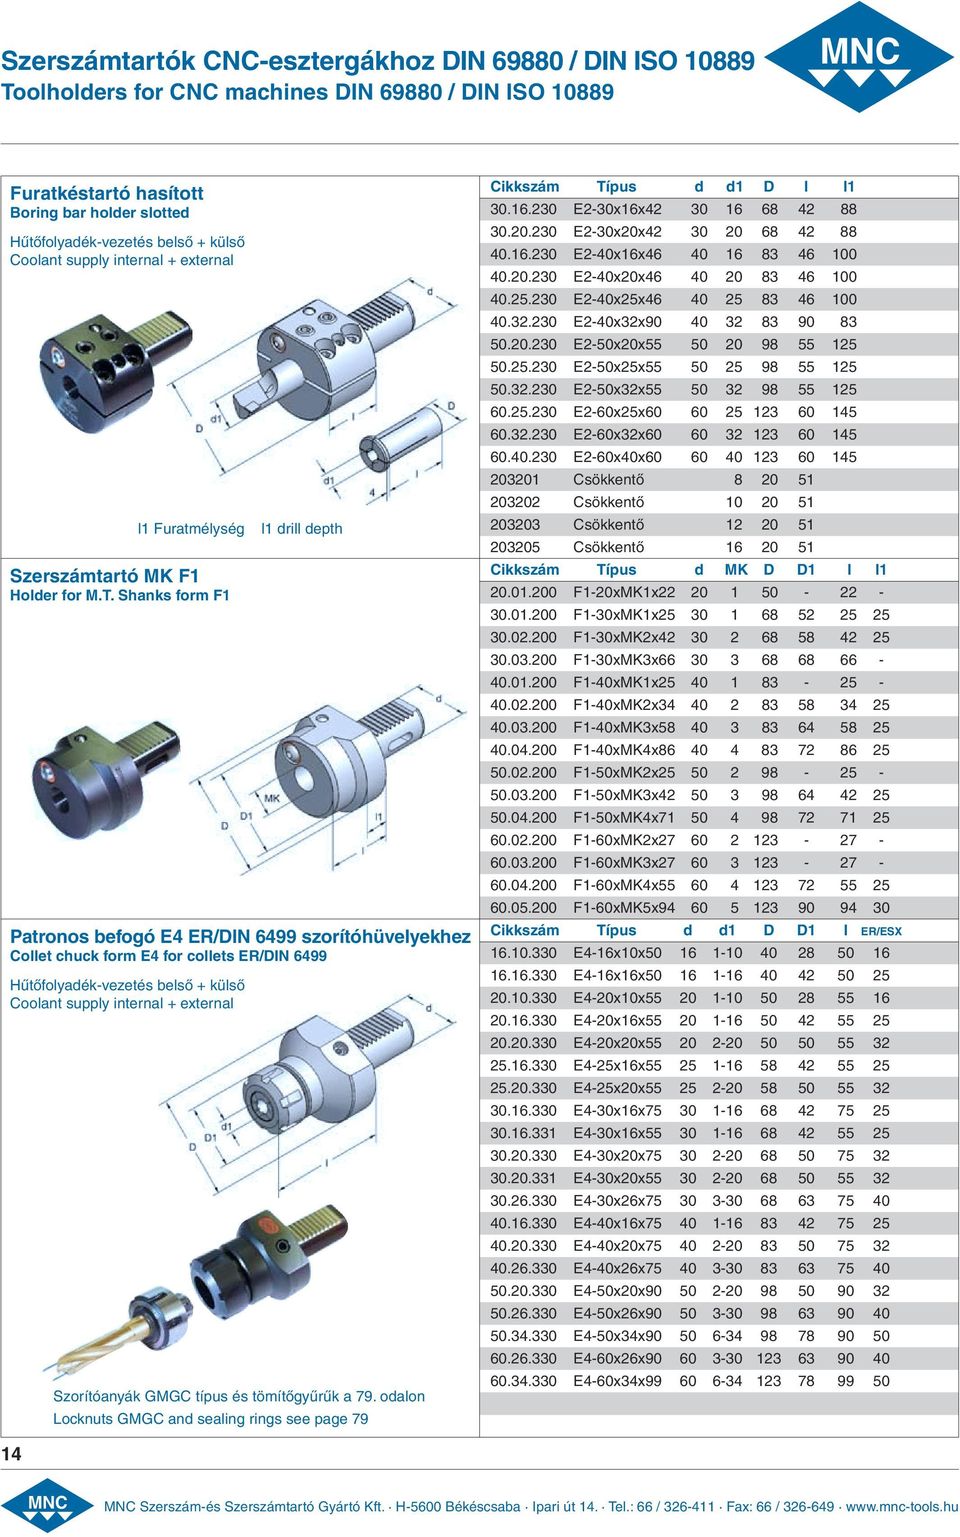 Shanks form F1 Patronos befogó E4 ER/DIN 6499 szorítóhüvelyekhez Collet chuck form E4 for collets ER/DIN 6499 Hűtőfolyadék-vezetés belső + külső Coolant supply internal + external l1 drill depth